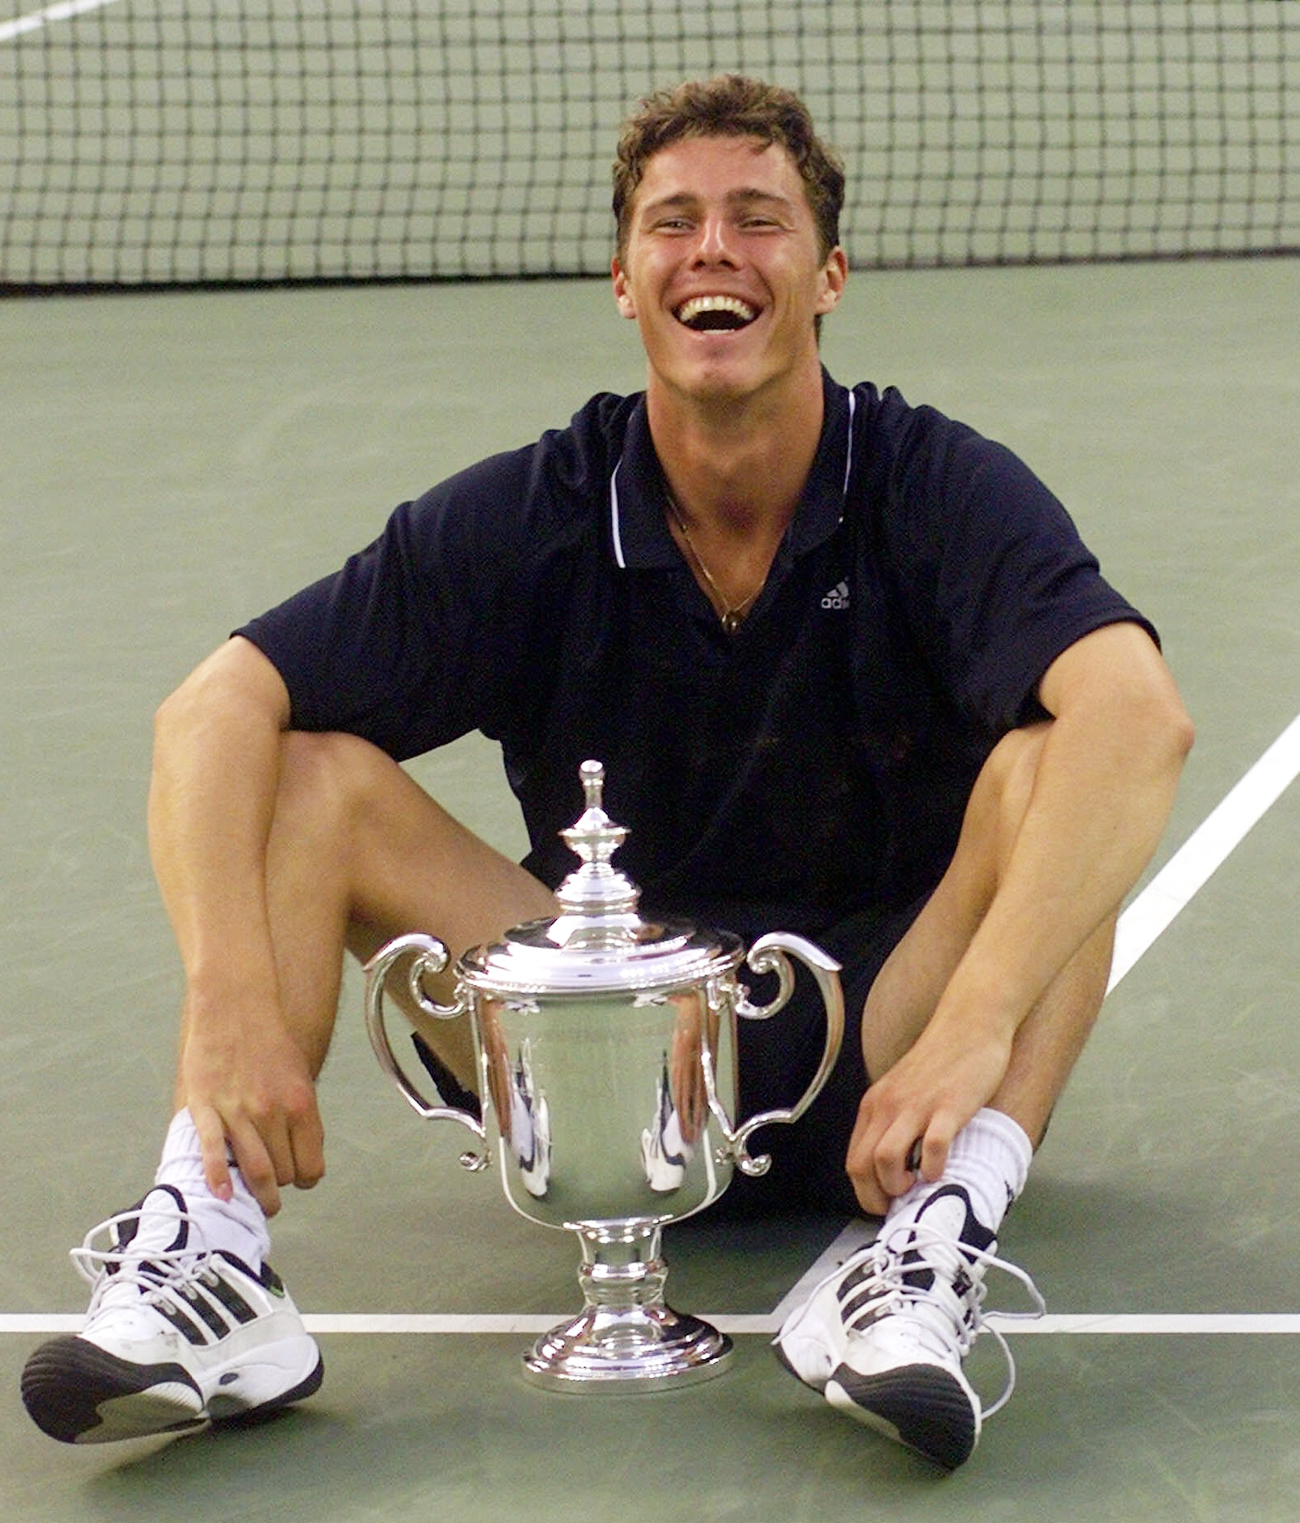 "Rusi z nasmehom izražajo, da so zares dobre volje ali pa imajo zares iskrene simpatije do sogovornika." Kot denimo tenisač Marat Safin, ki se je leta 2000 takole veselil zmage v finalu turnirja US Open. Foto: AP